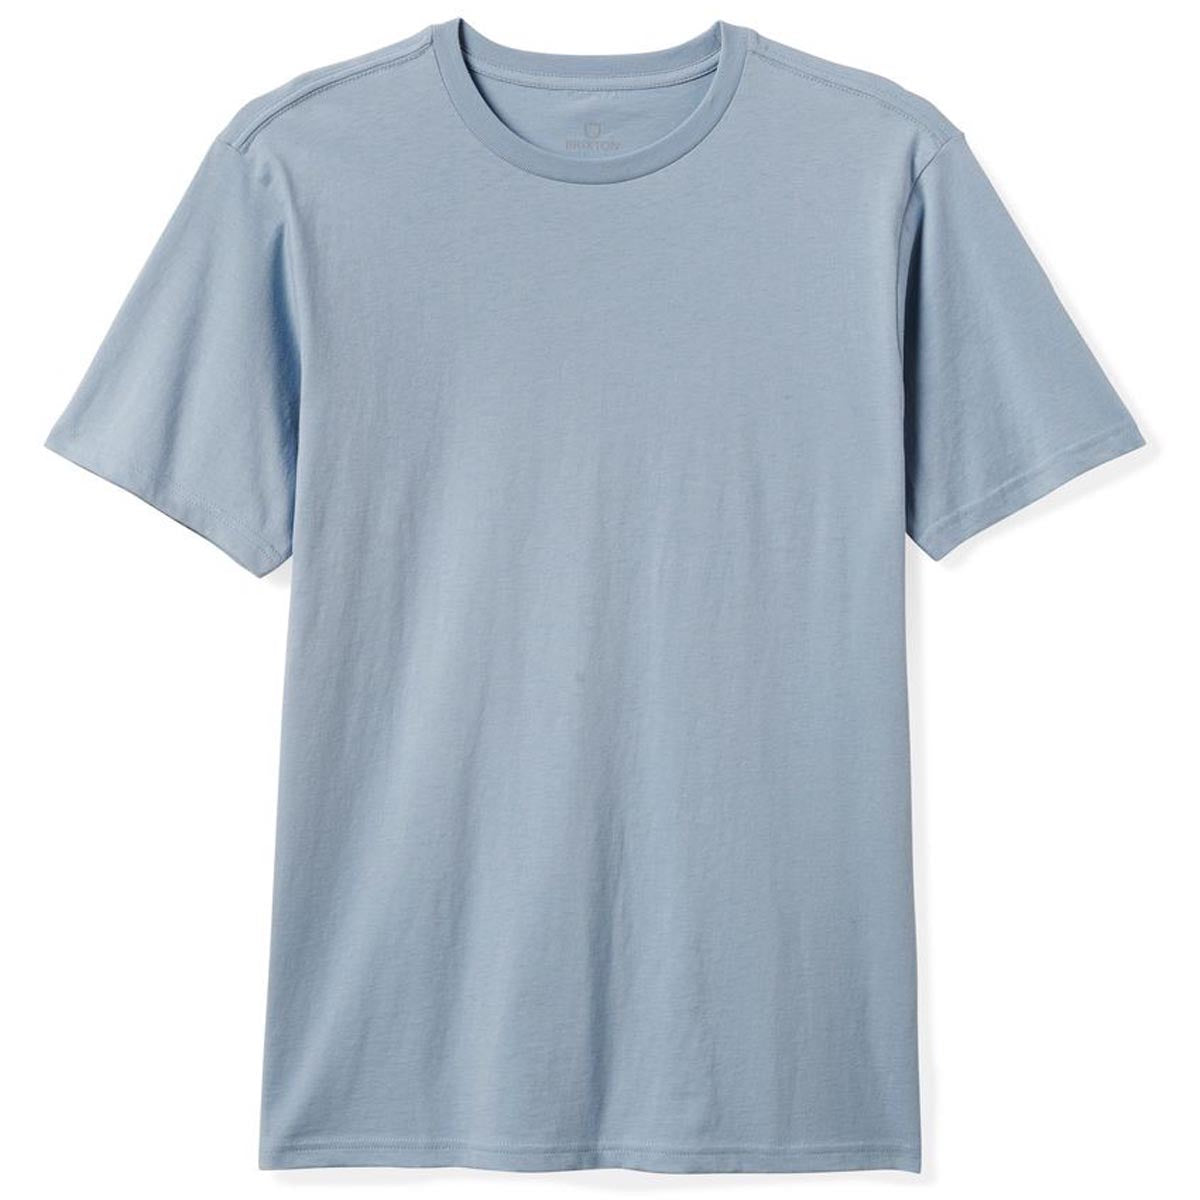 Brixton Basic T-Shirt - Dusty Blue image 1